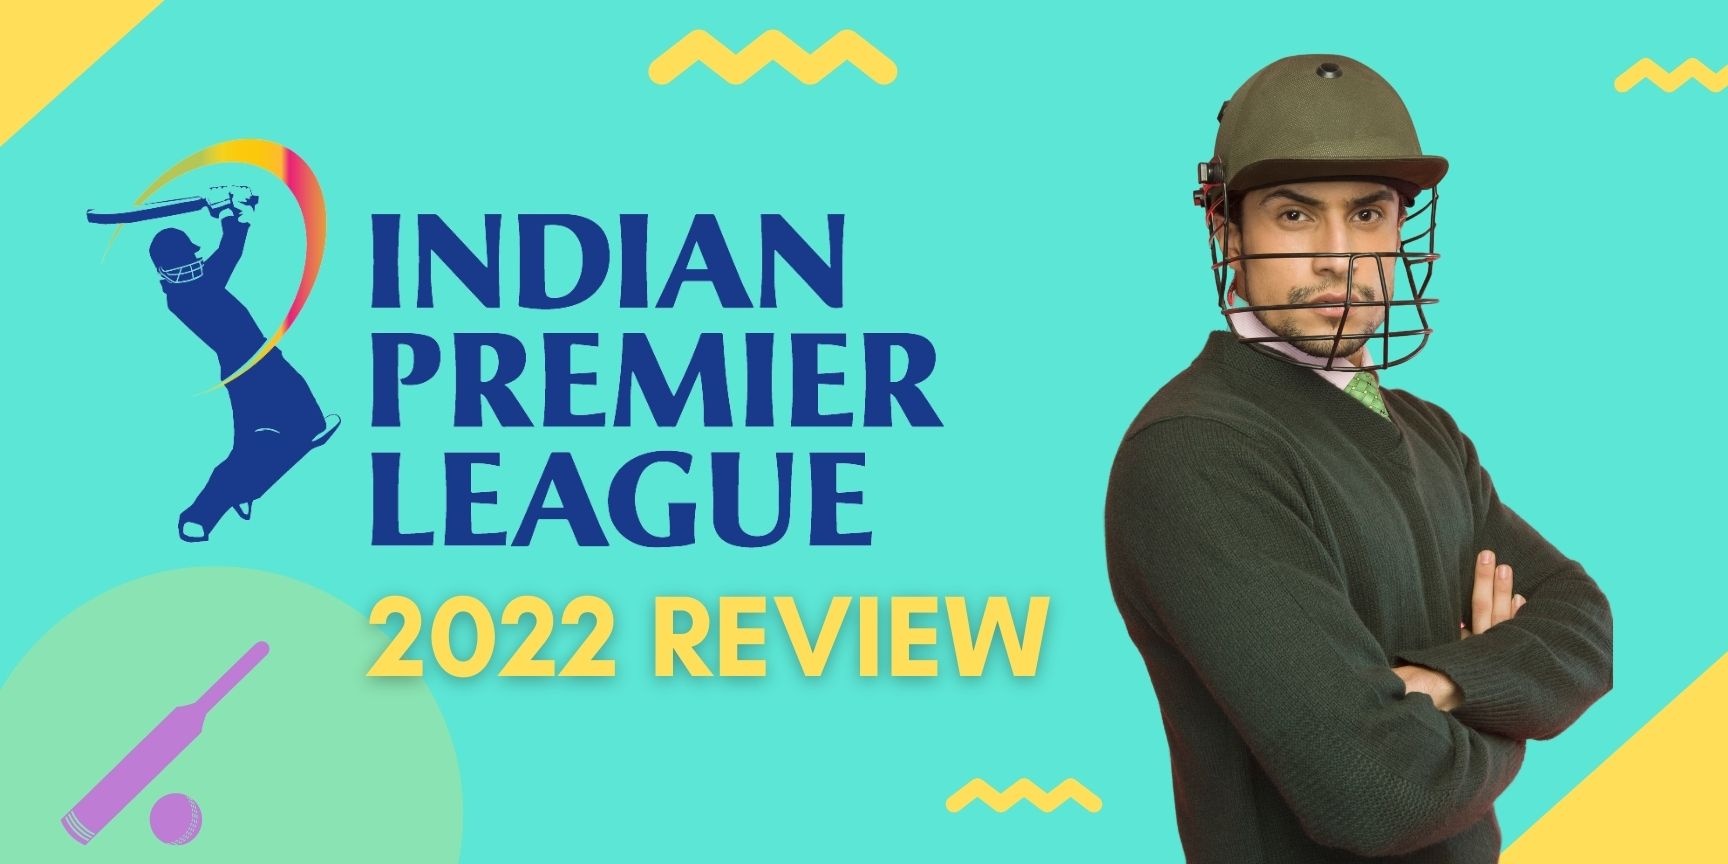 Indian Premier League 2022 review